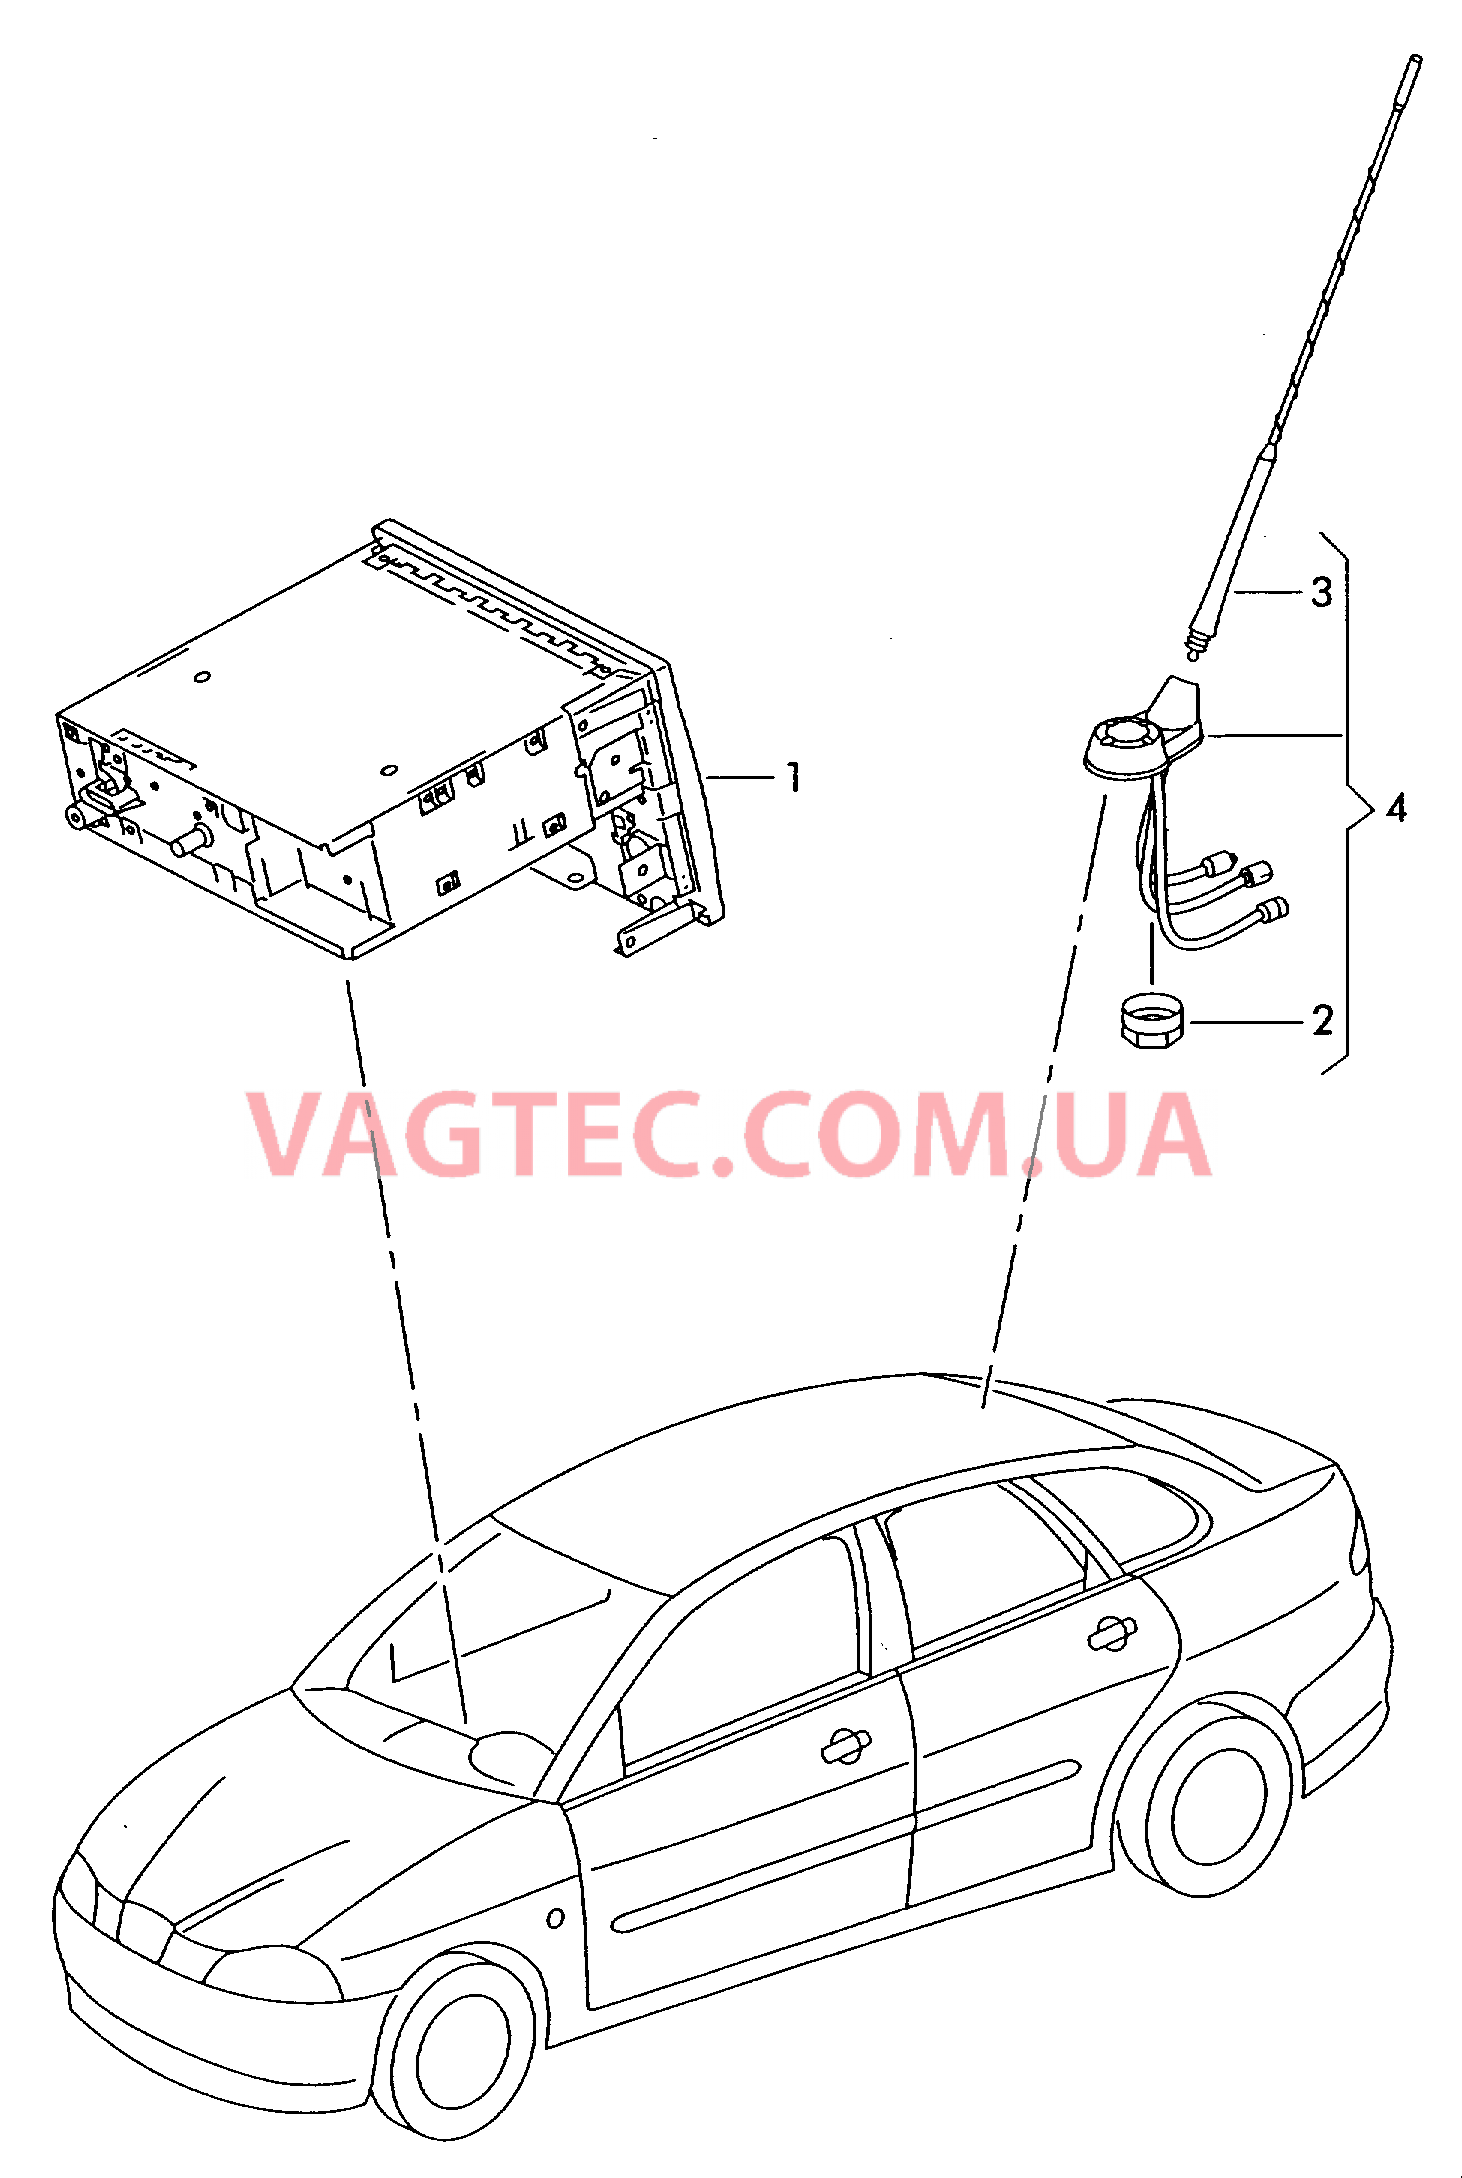 Электрические детали для системы навигации  для SEAT Ibiza 2004